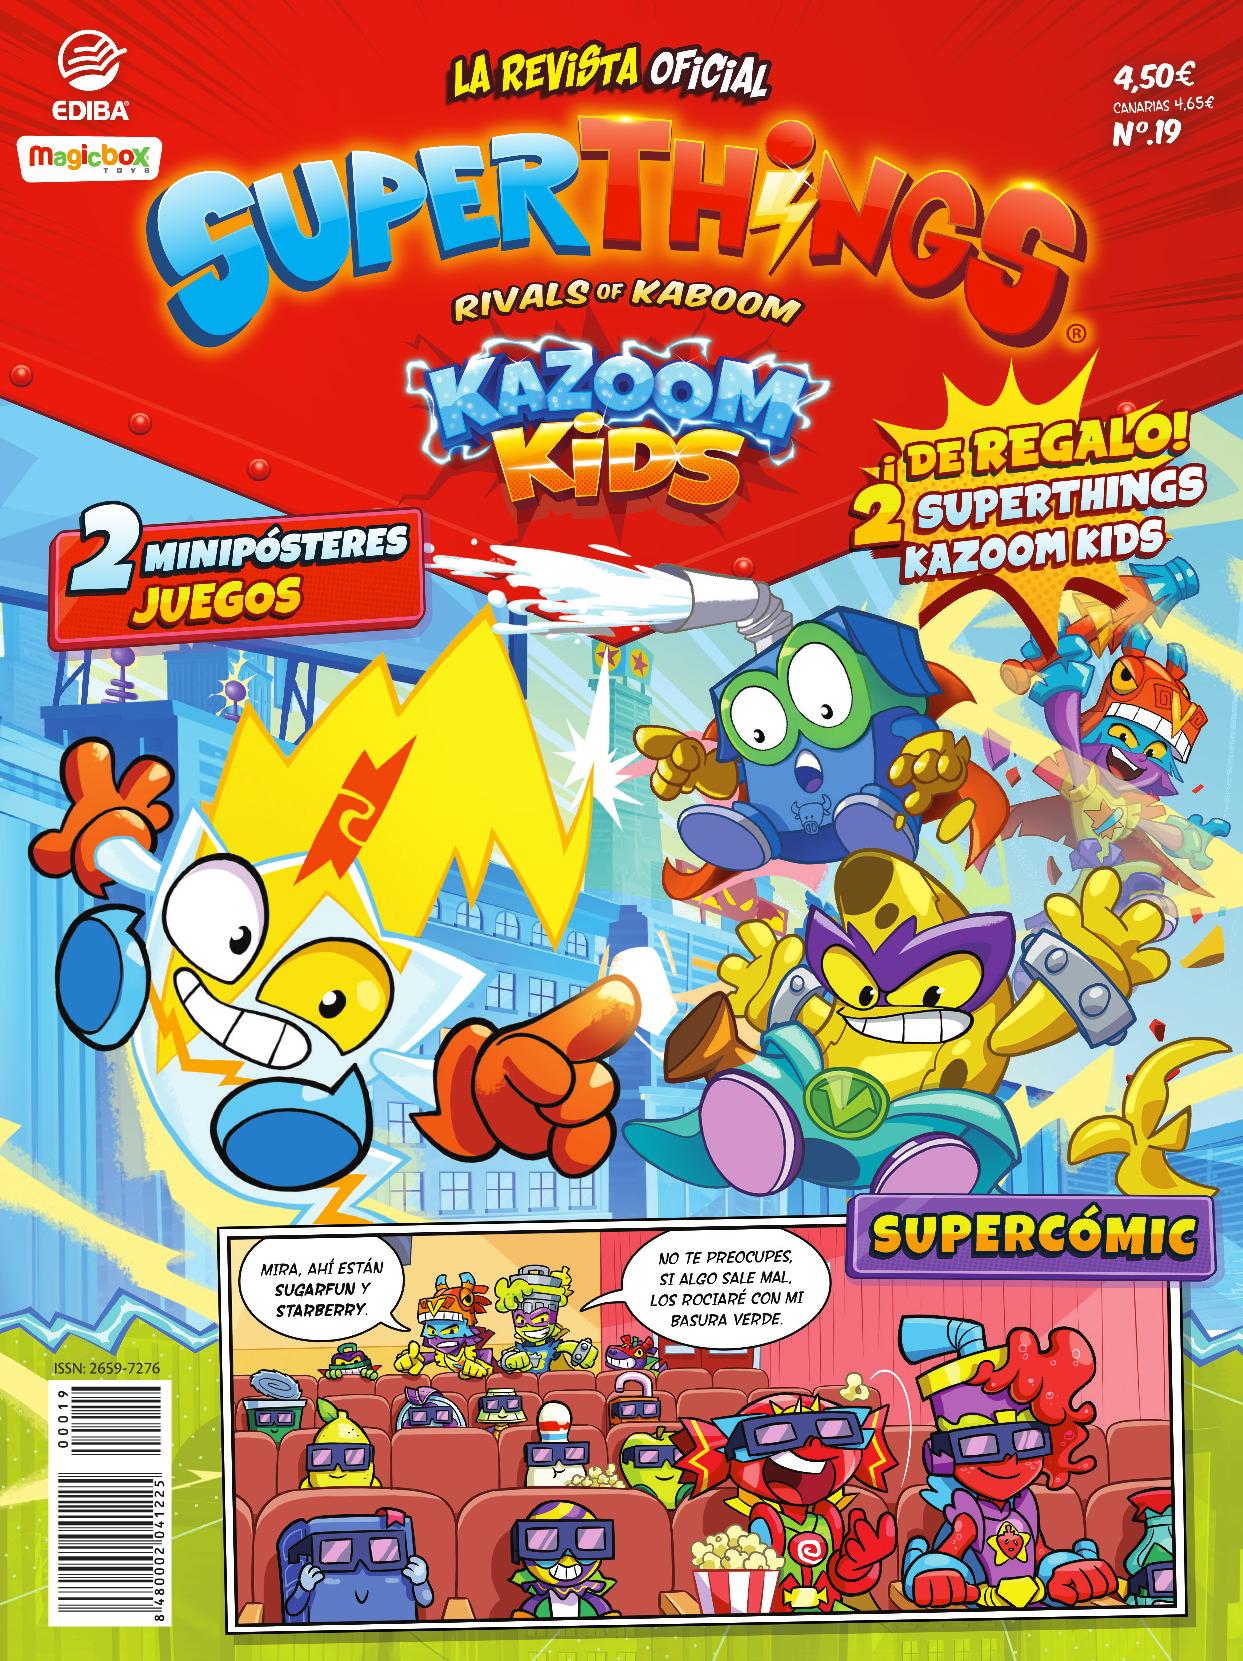 Superthings Nº 19 Serie Kazoom Kids